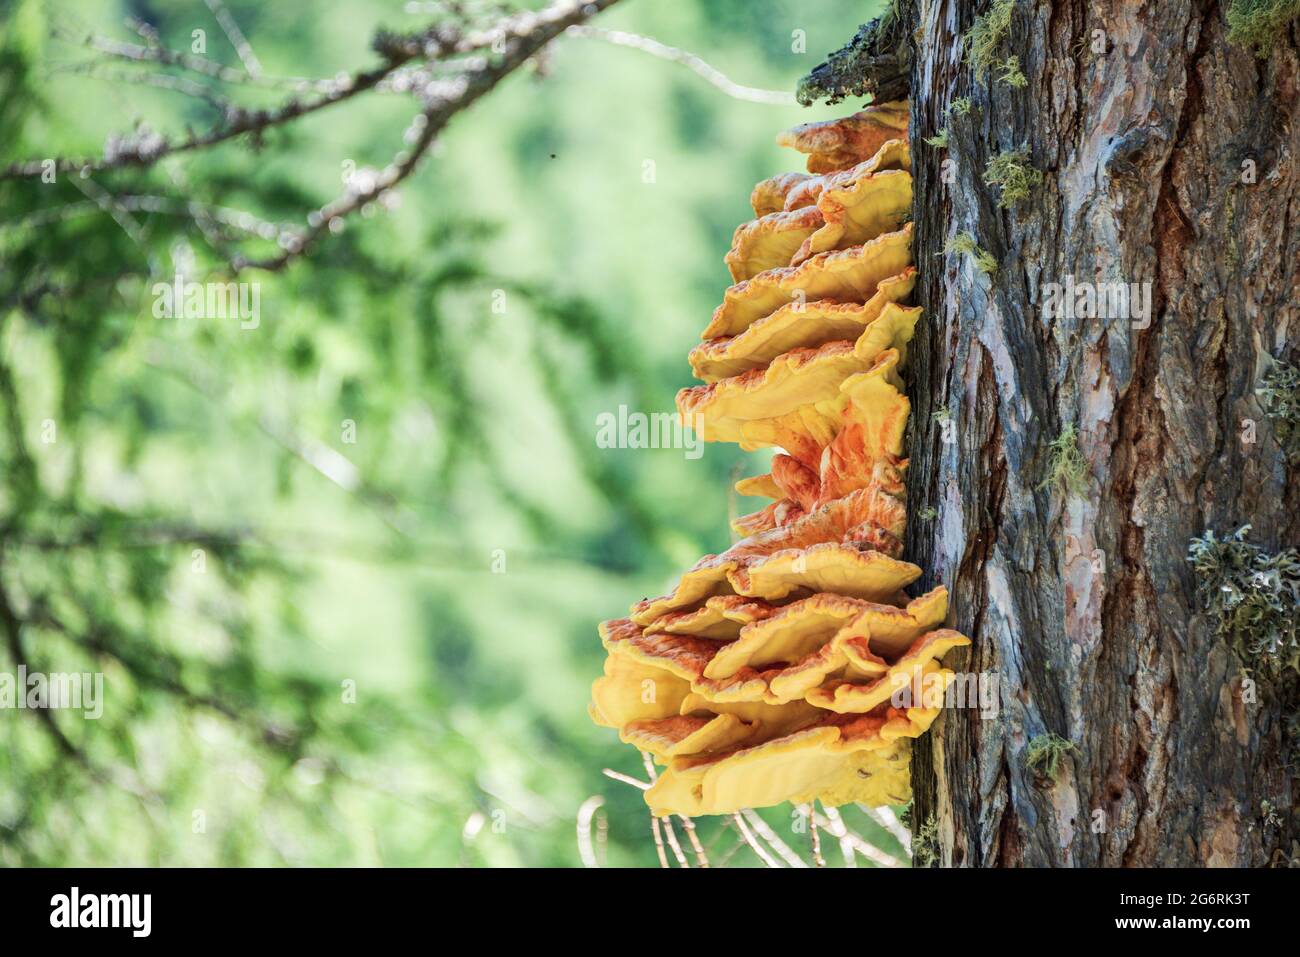 Le champignon orange qui pousse sur un arbre. Le tronc de l'arbre est recouvert de teinture, qui est un parasite. Des couleurs fraîches avec une faible profondeur de champ. Banque D'Images